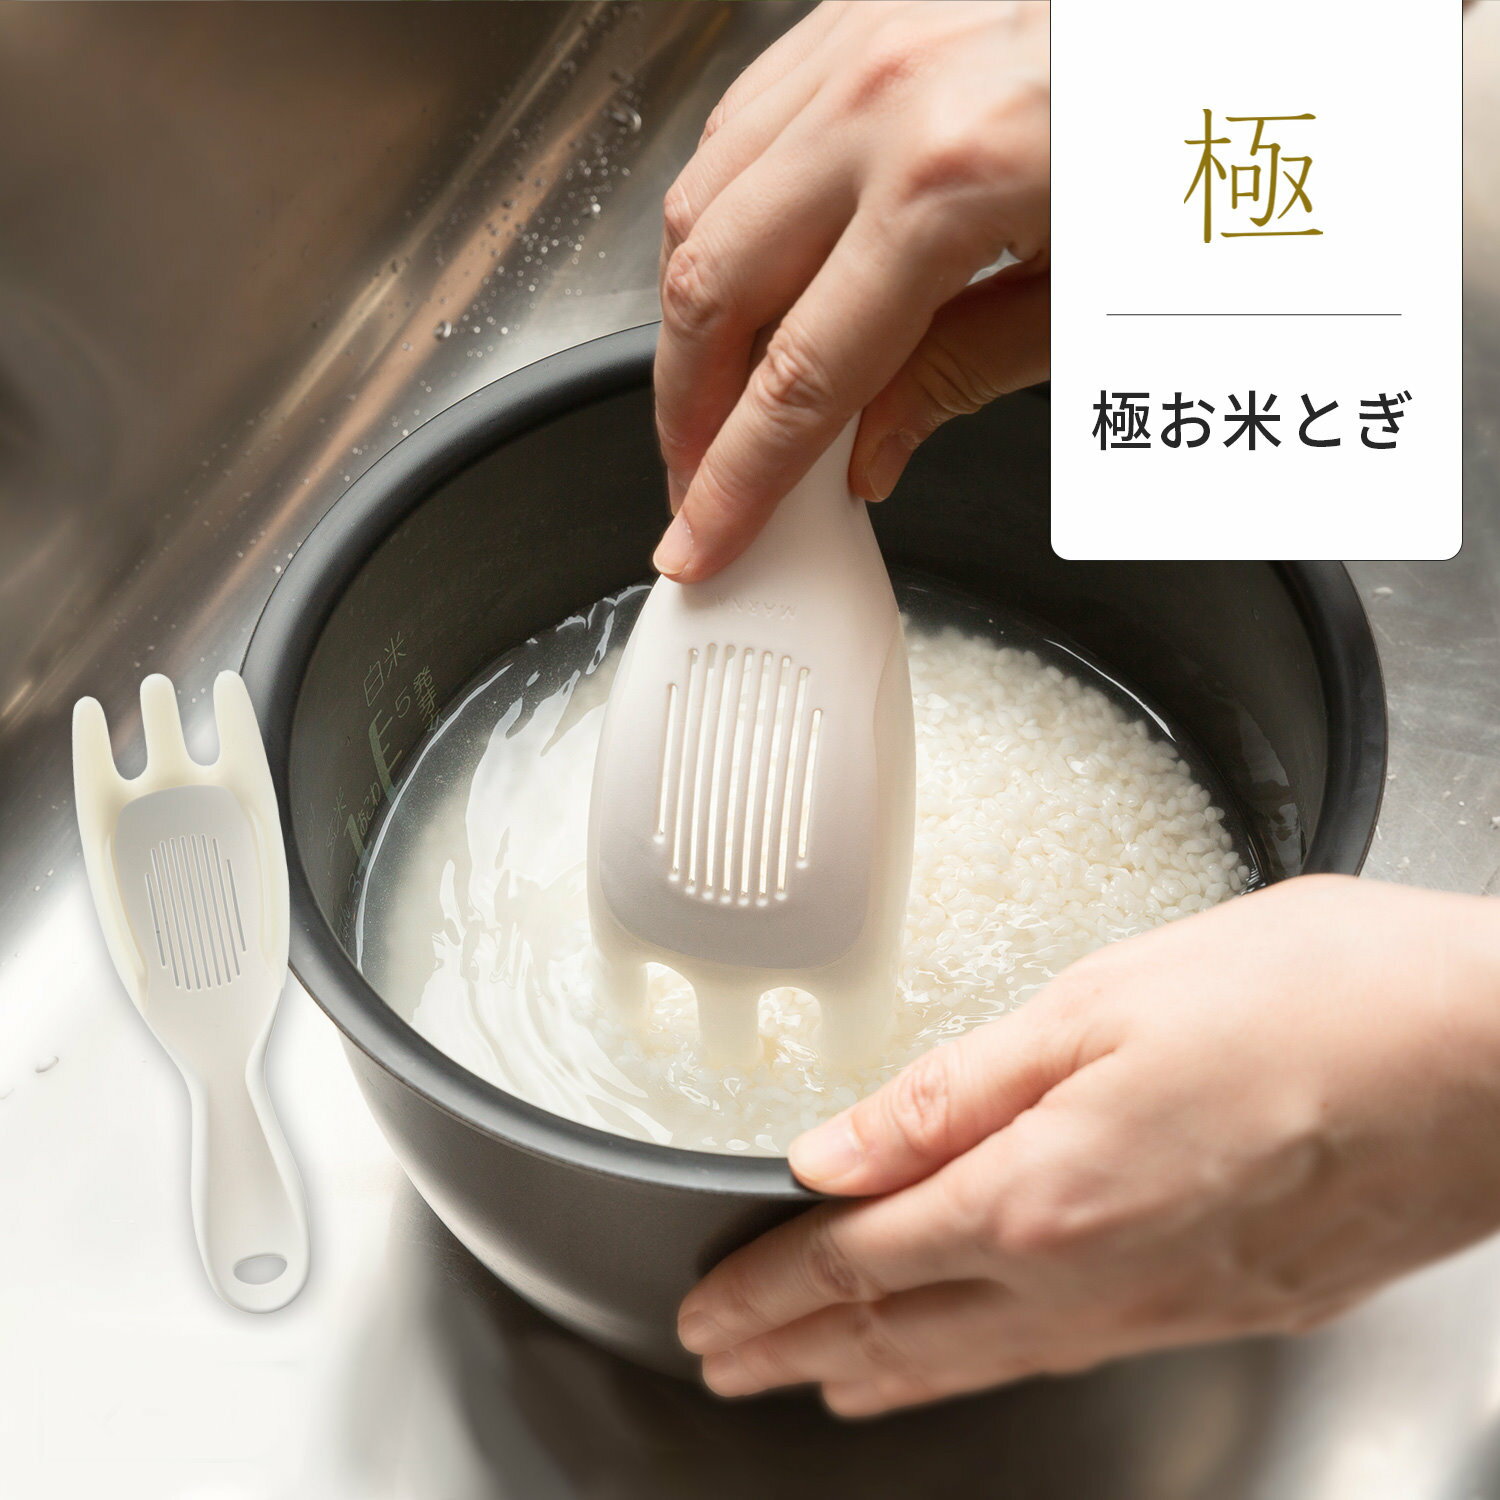 asdfkitty*日本MARNA 三叉型軟式洗米器含瀝水網-洗米.不傷手 瀝水洗米器-綠豆.紅豆也可洗-日本正版商品